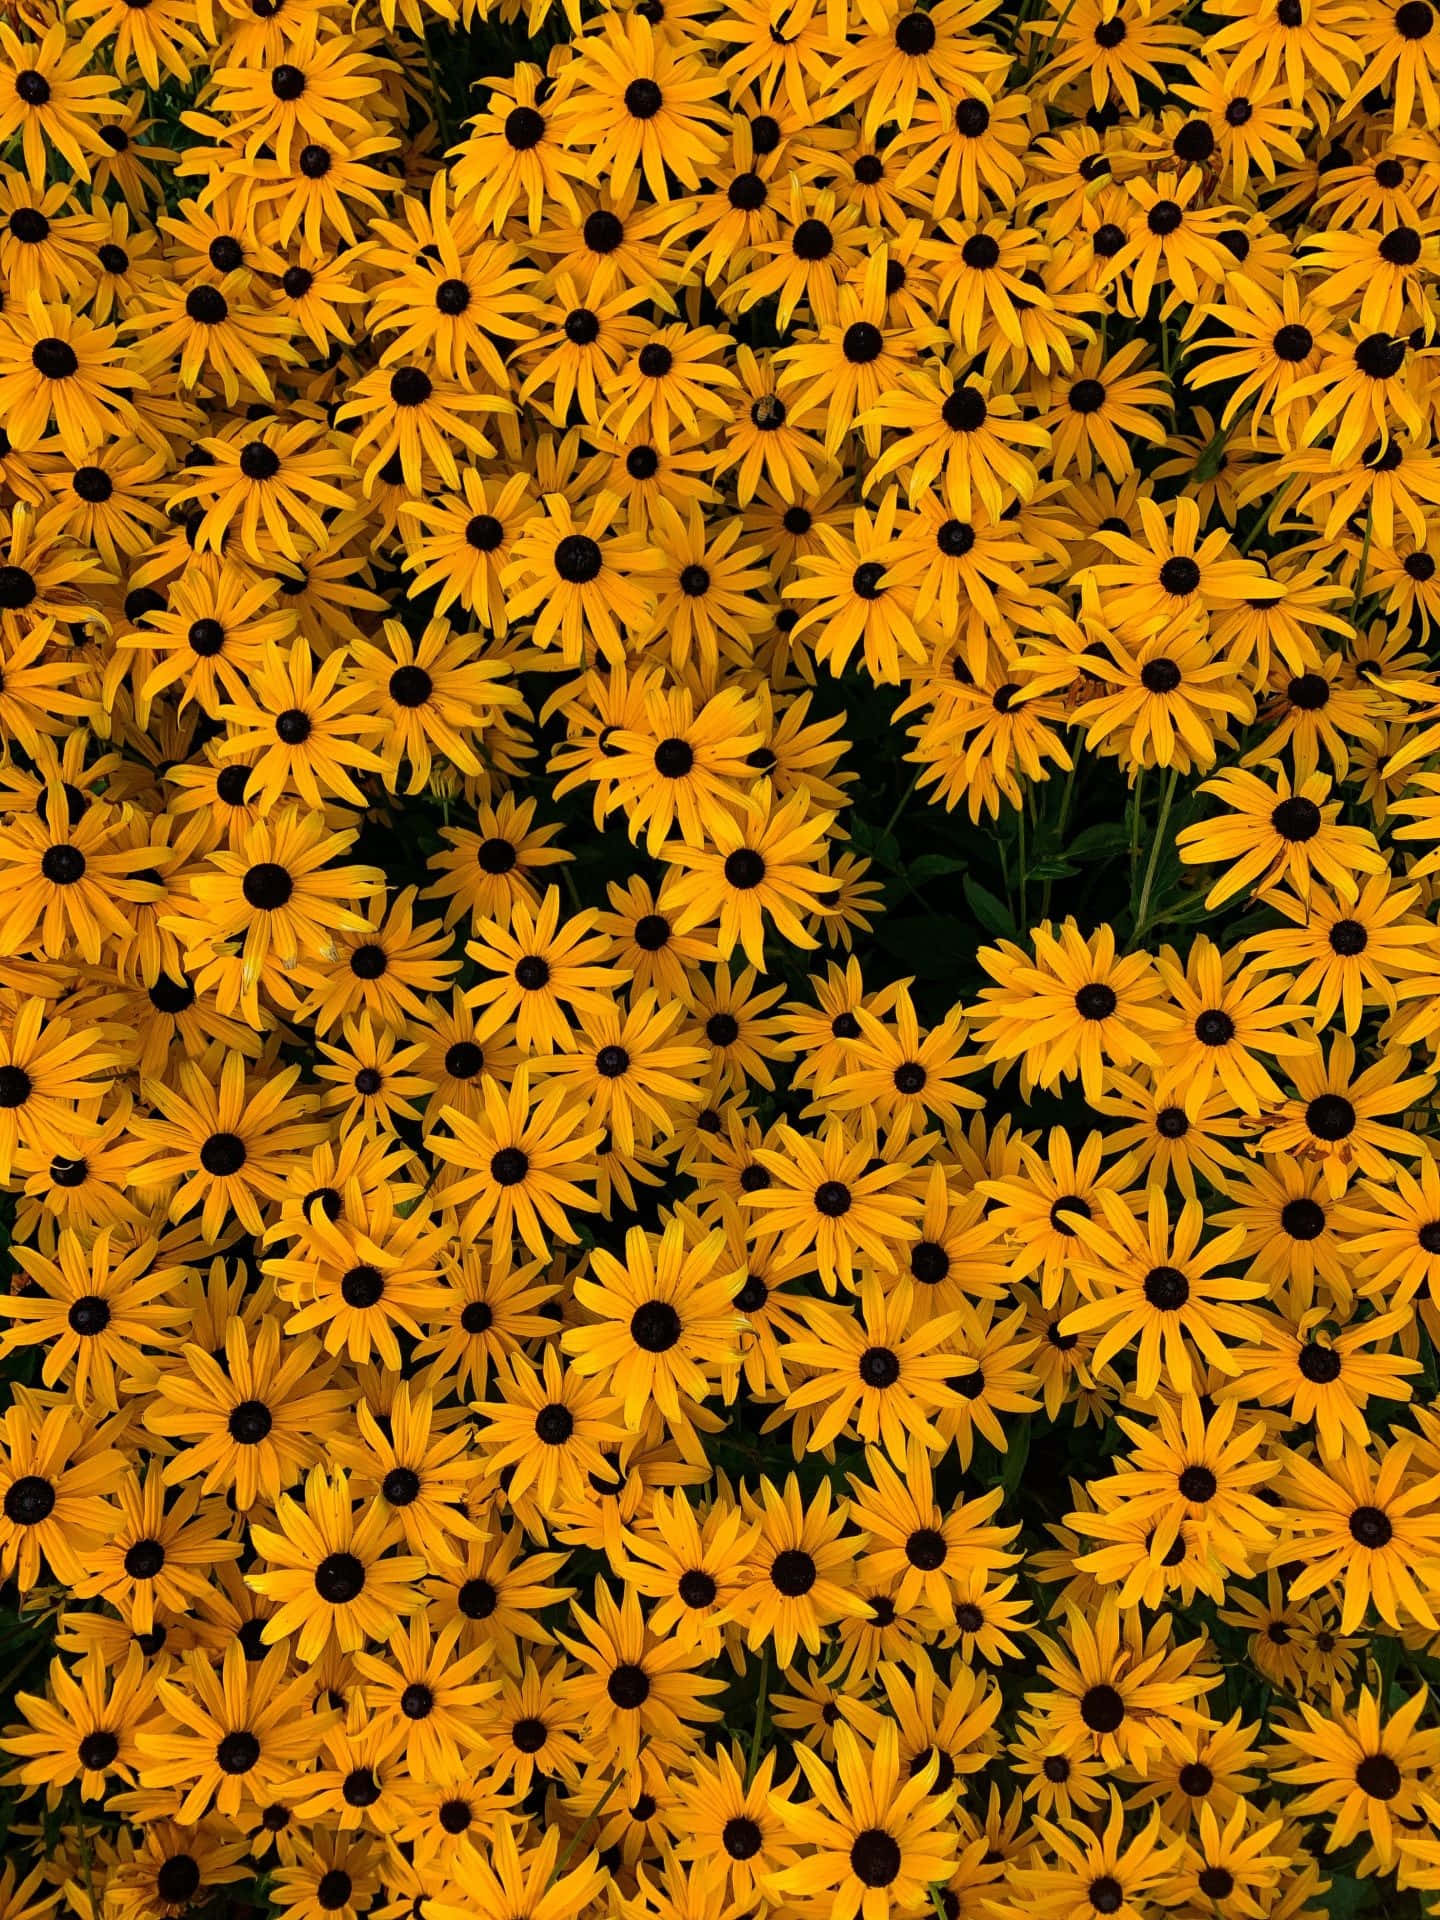 Uncampo De Flores Amarillas Con Manchas Negras Fondo de pantalla